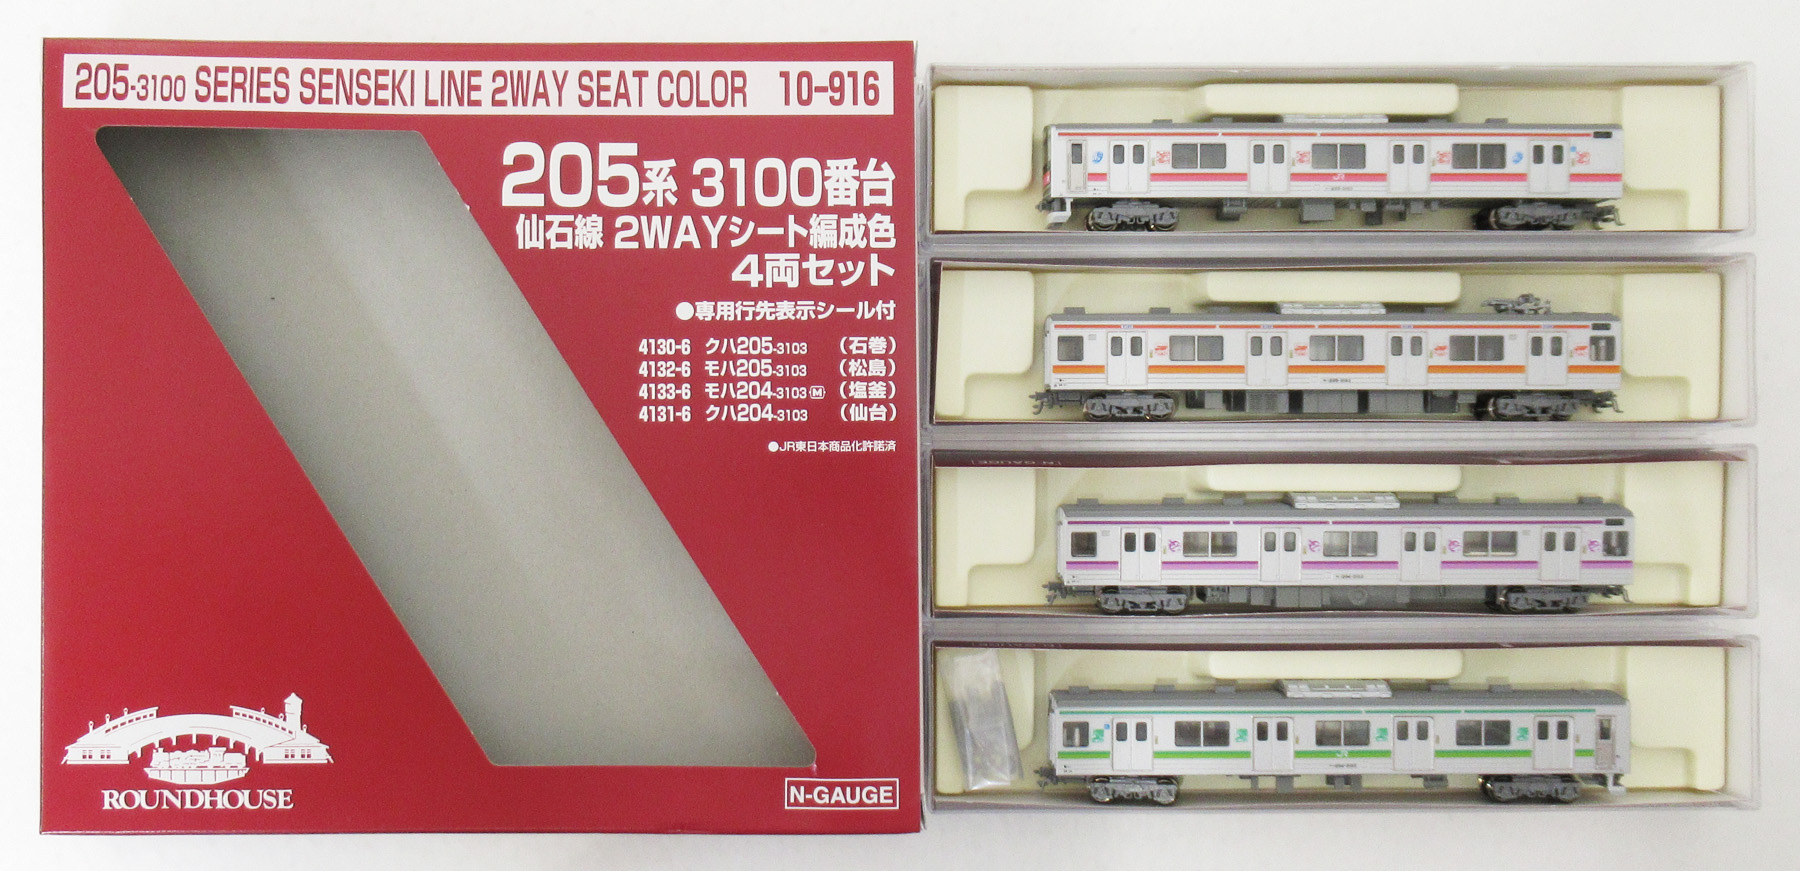 205系3100番台 仙石線 2wayシート編成色 ラウンドハウス - 鉄道模型